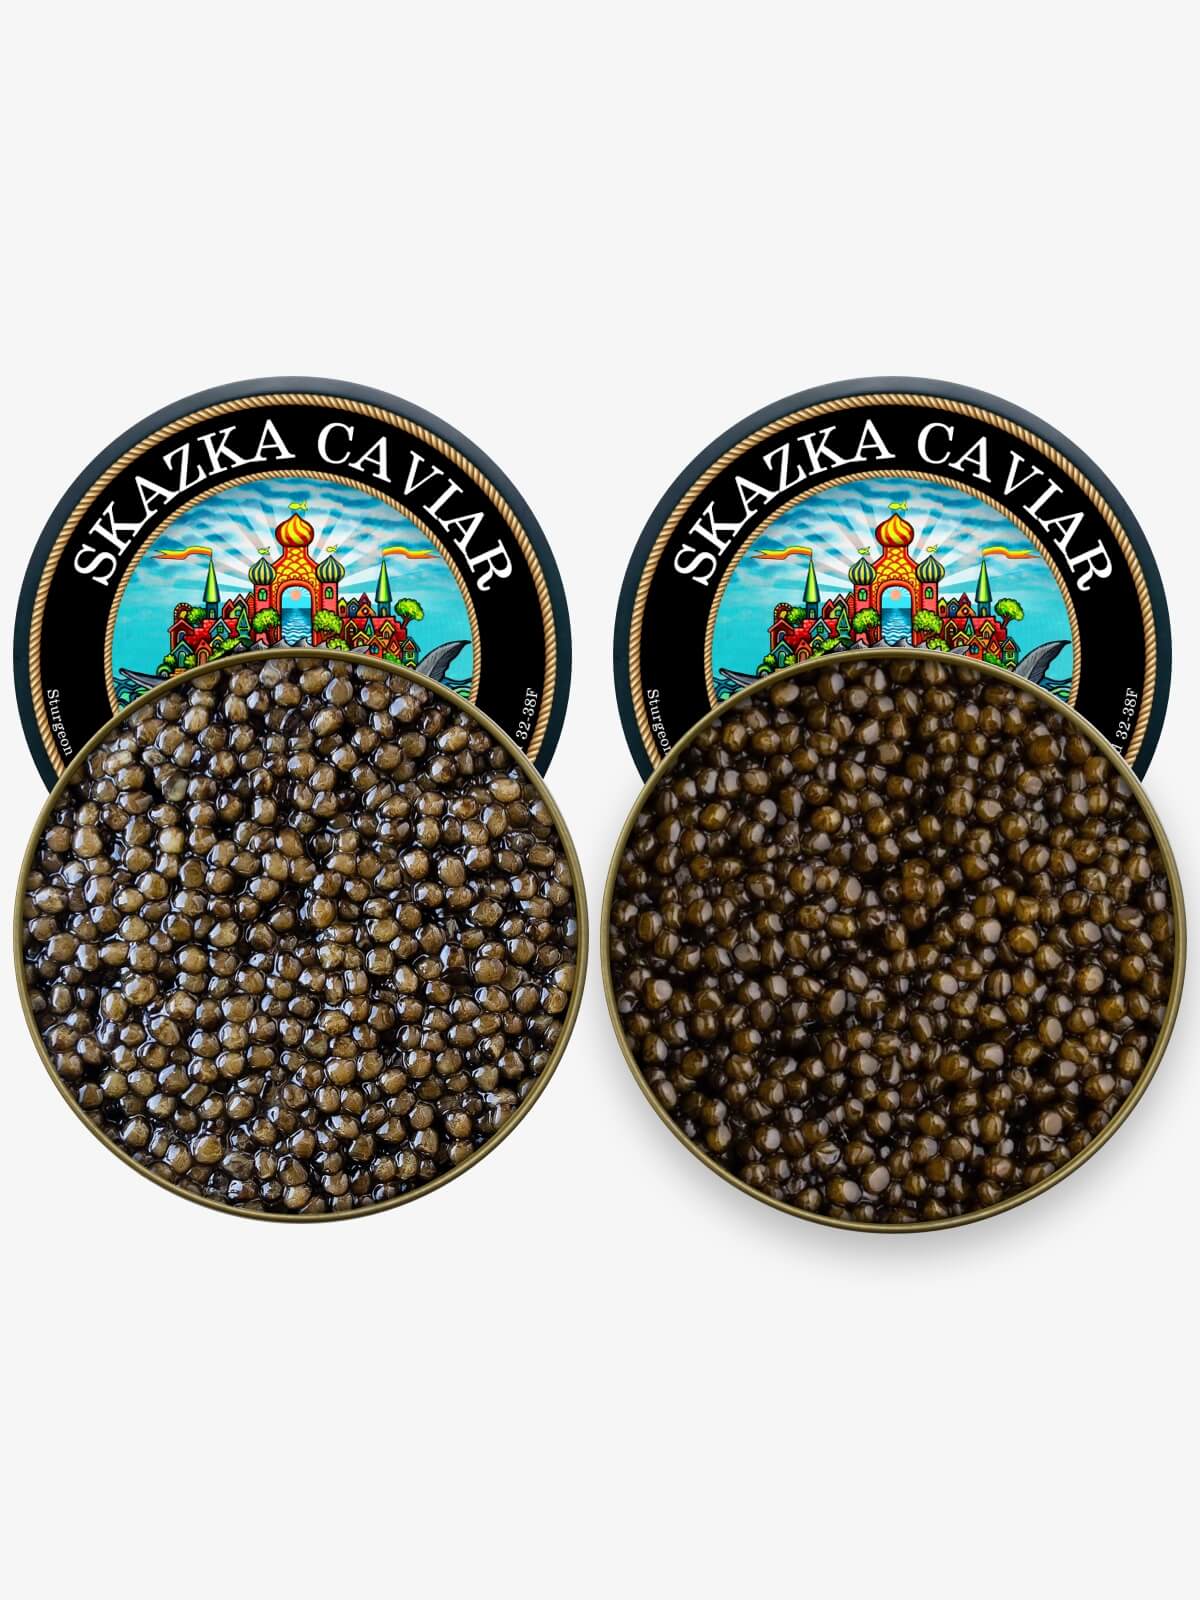 Black Caviar Sampler (2oz Kaluga + 2oz Osetra)